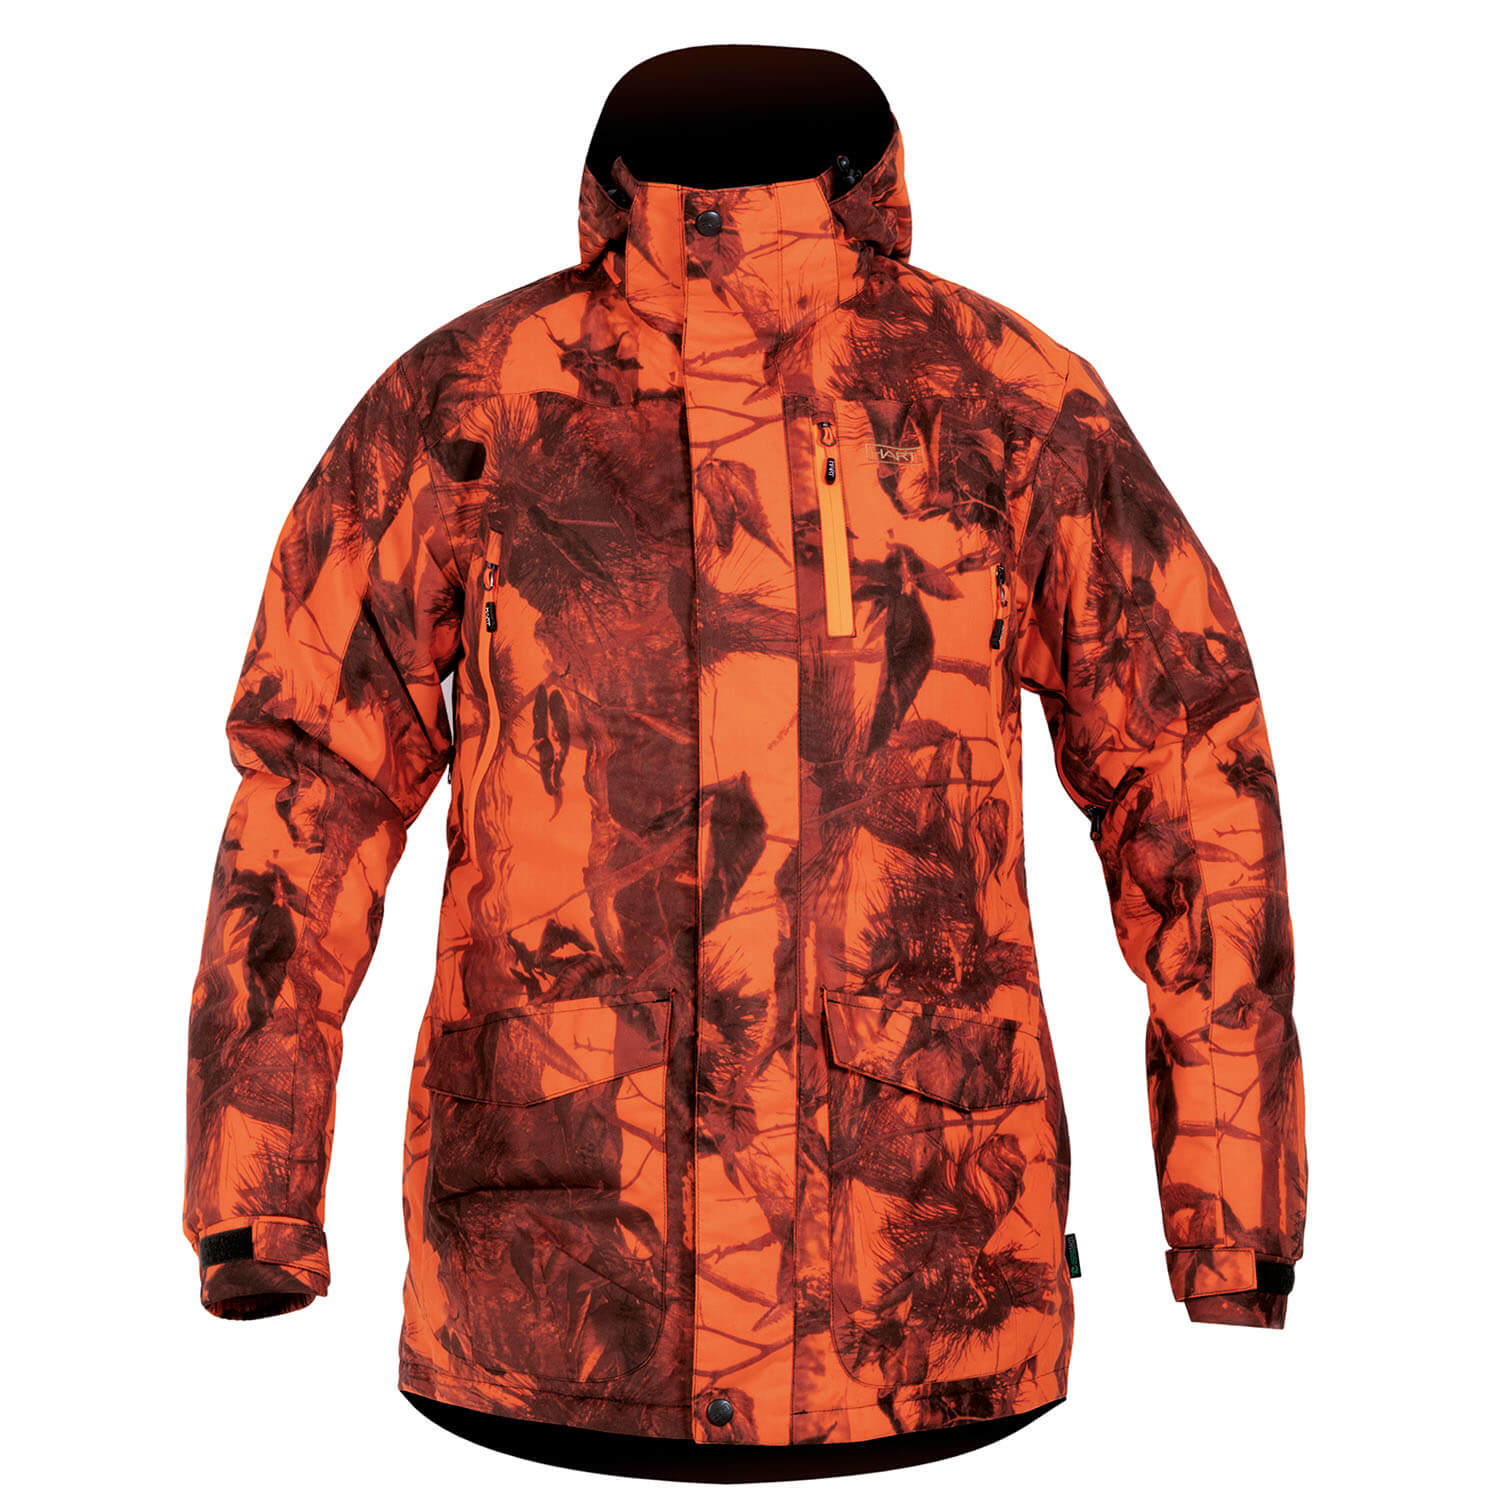 Hart Jacket Donon-J HT (camo blaze) - Camouflage Jackets